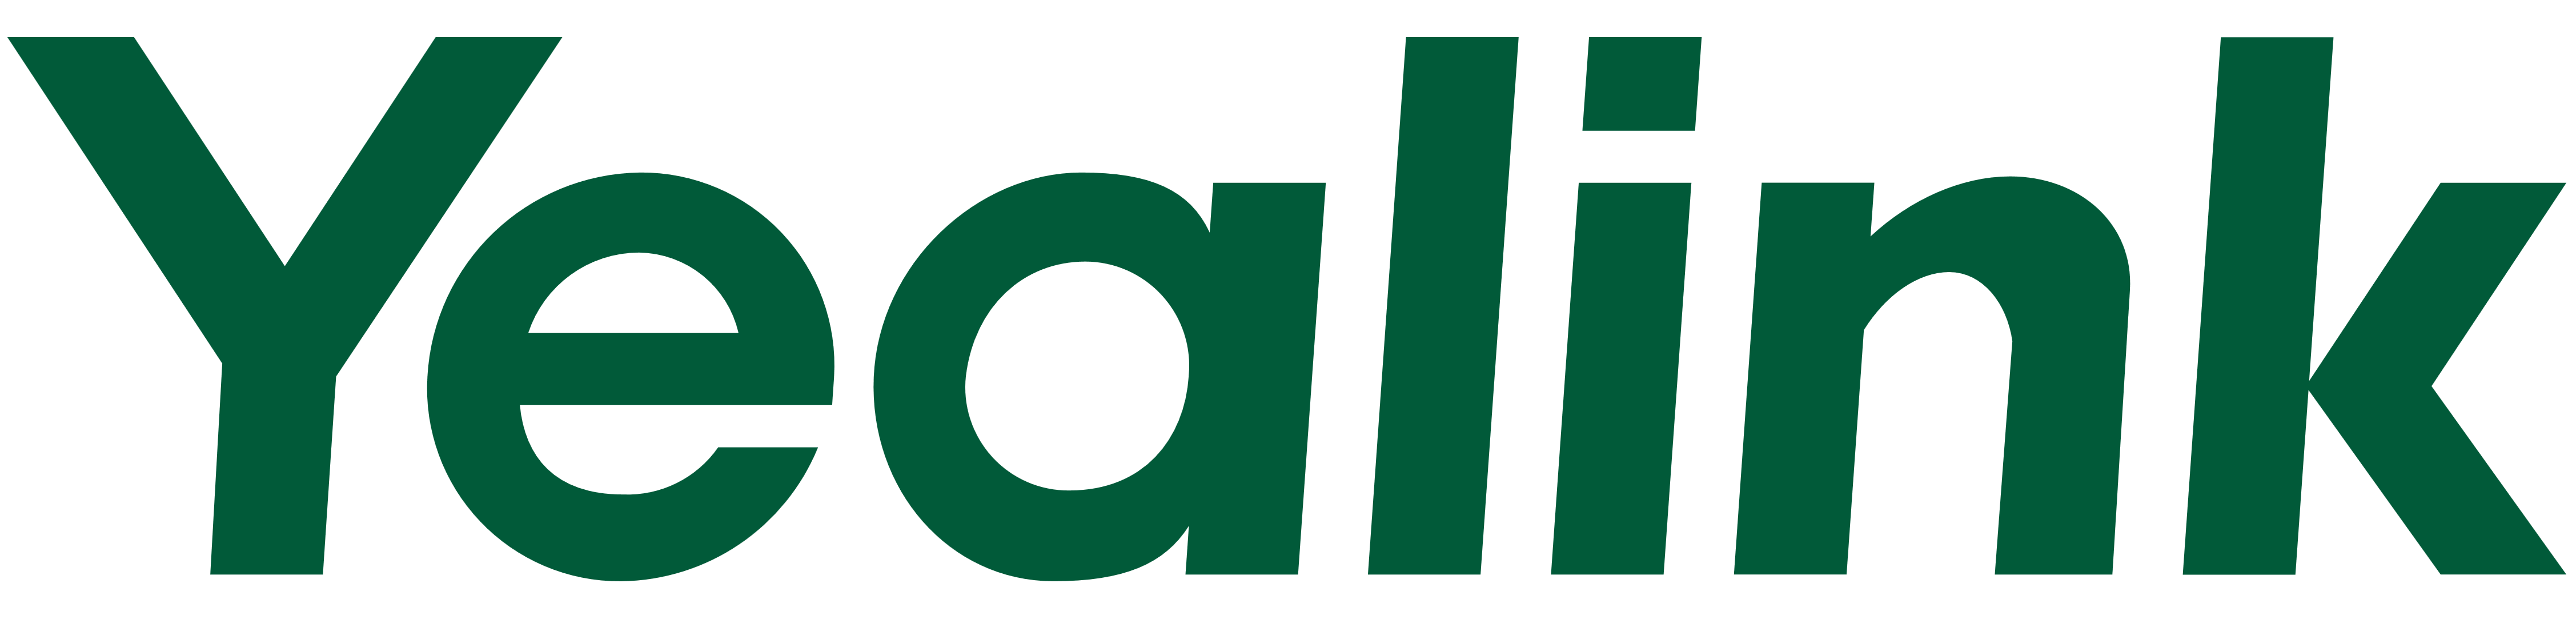 Yealink logo, logotype